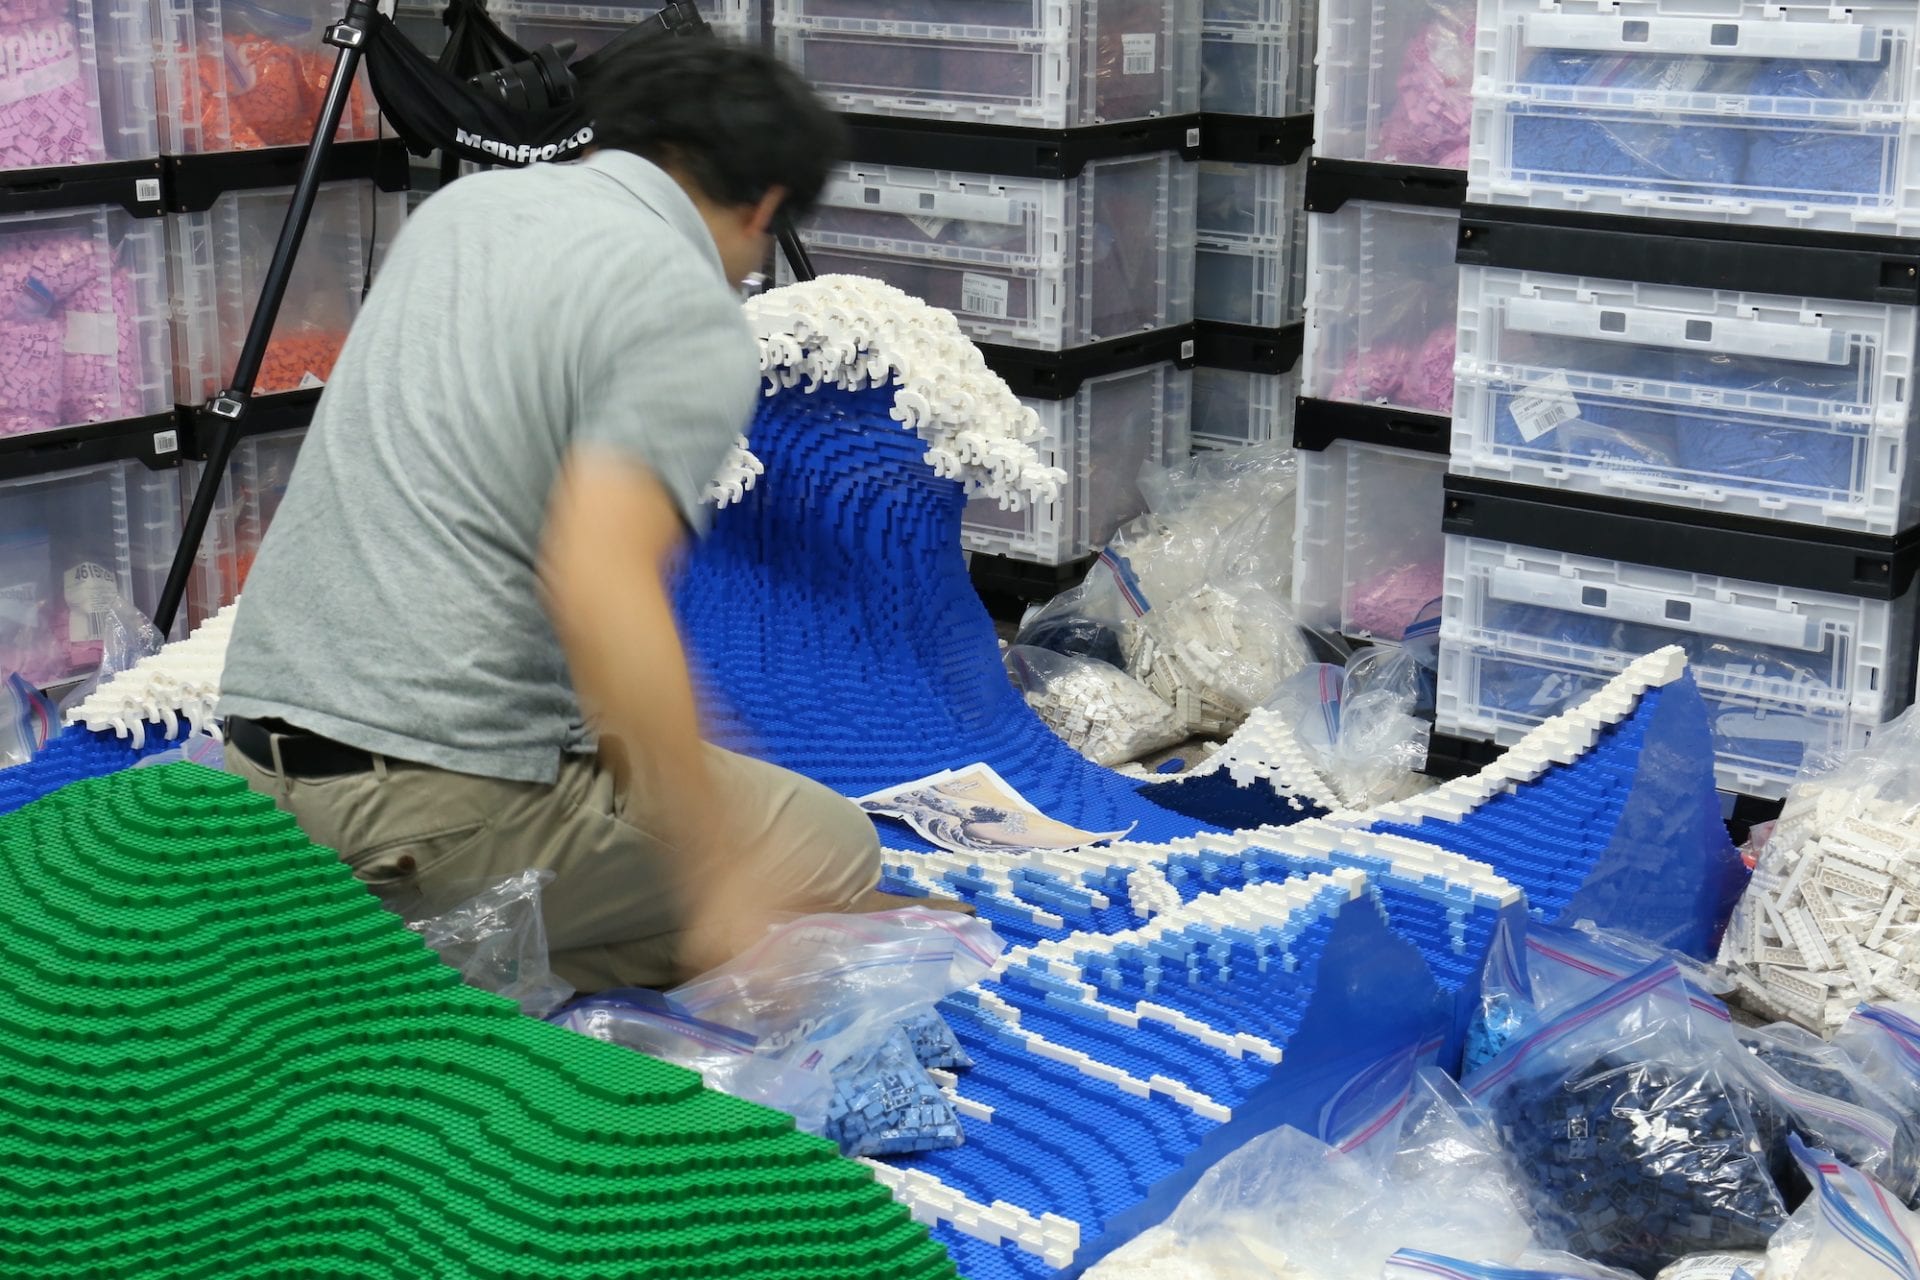 L'artiste japonais a recréé Jumpei Mitsui recrée "La Vague" d'Hokusai avec 50 000 briques LEGO